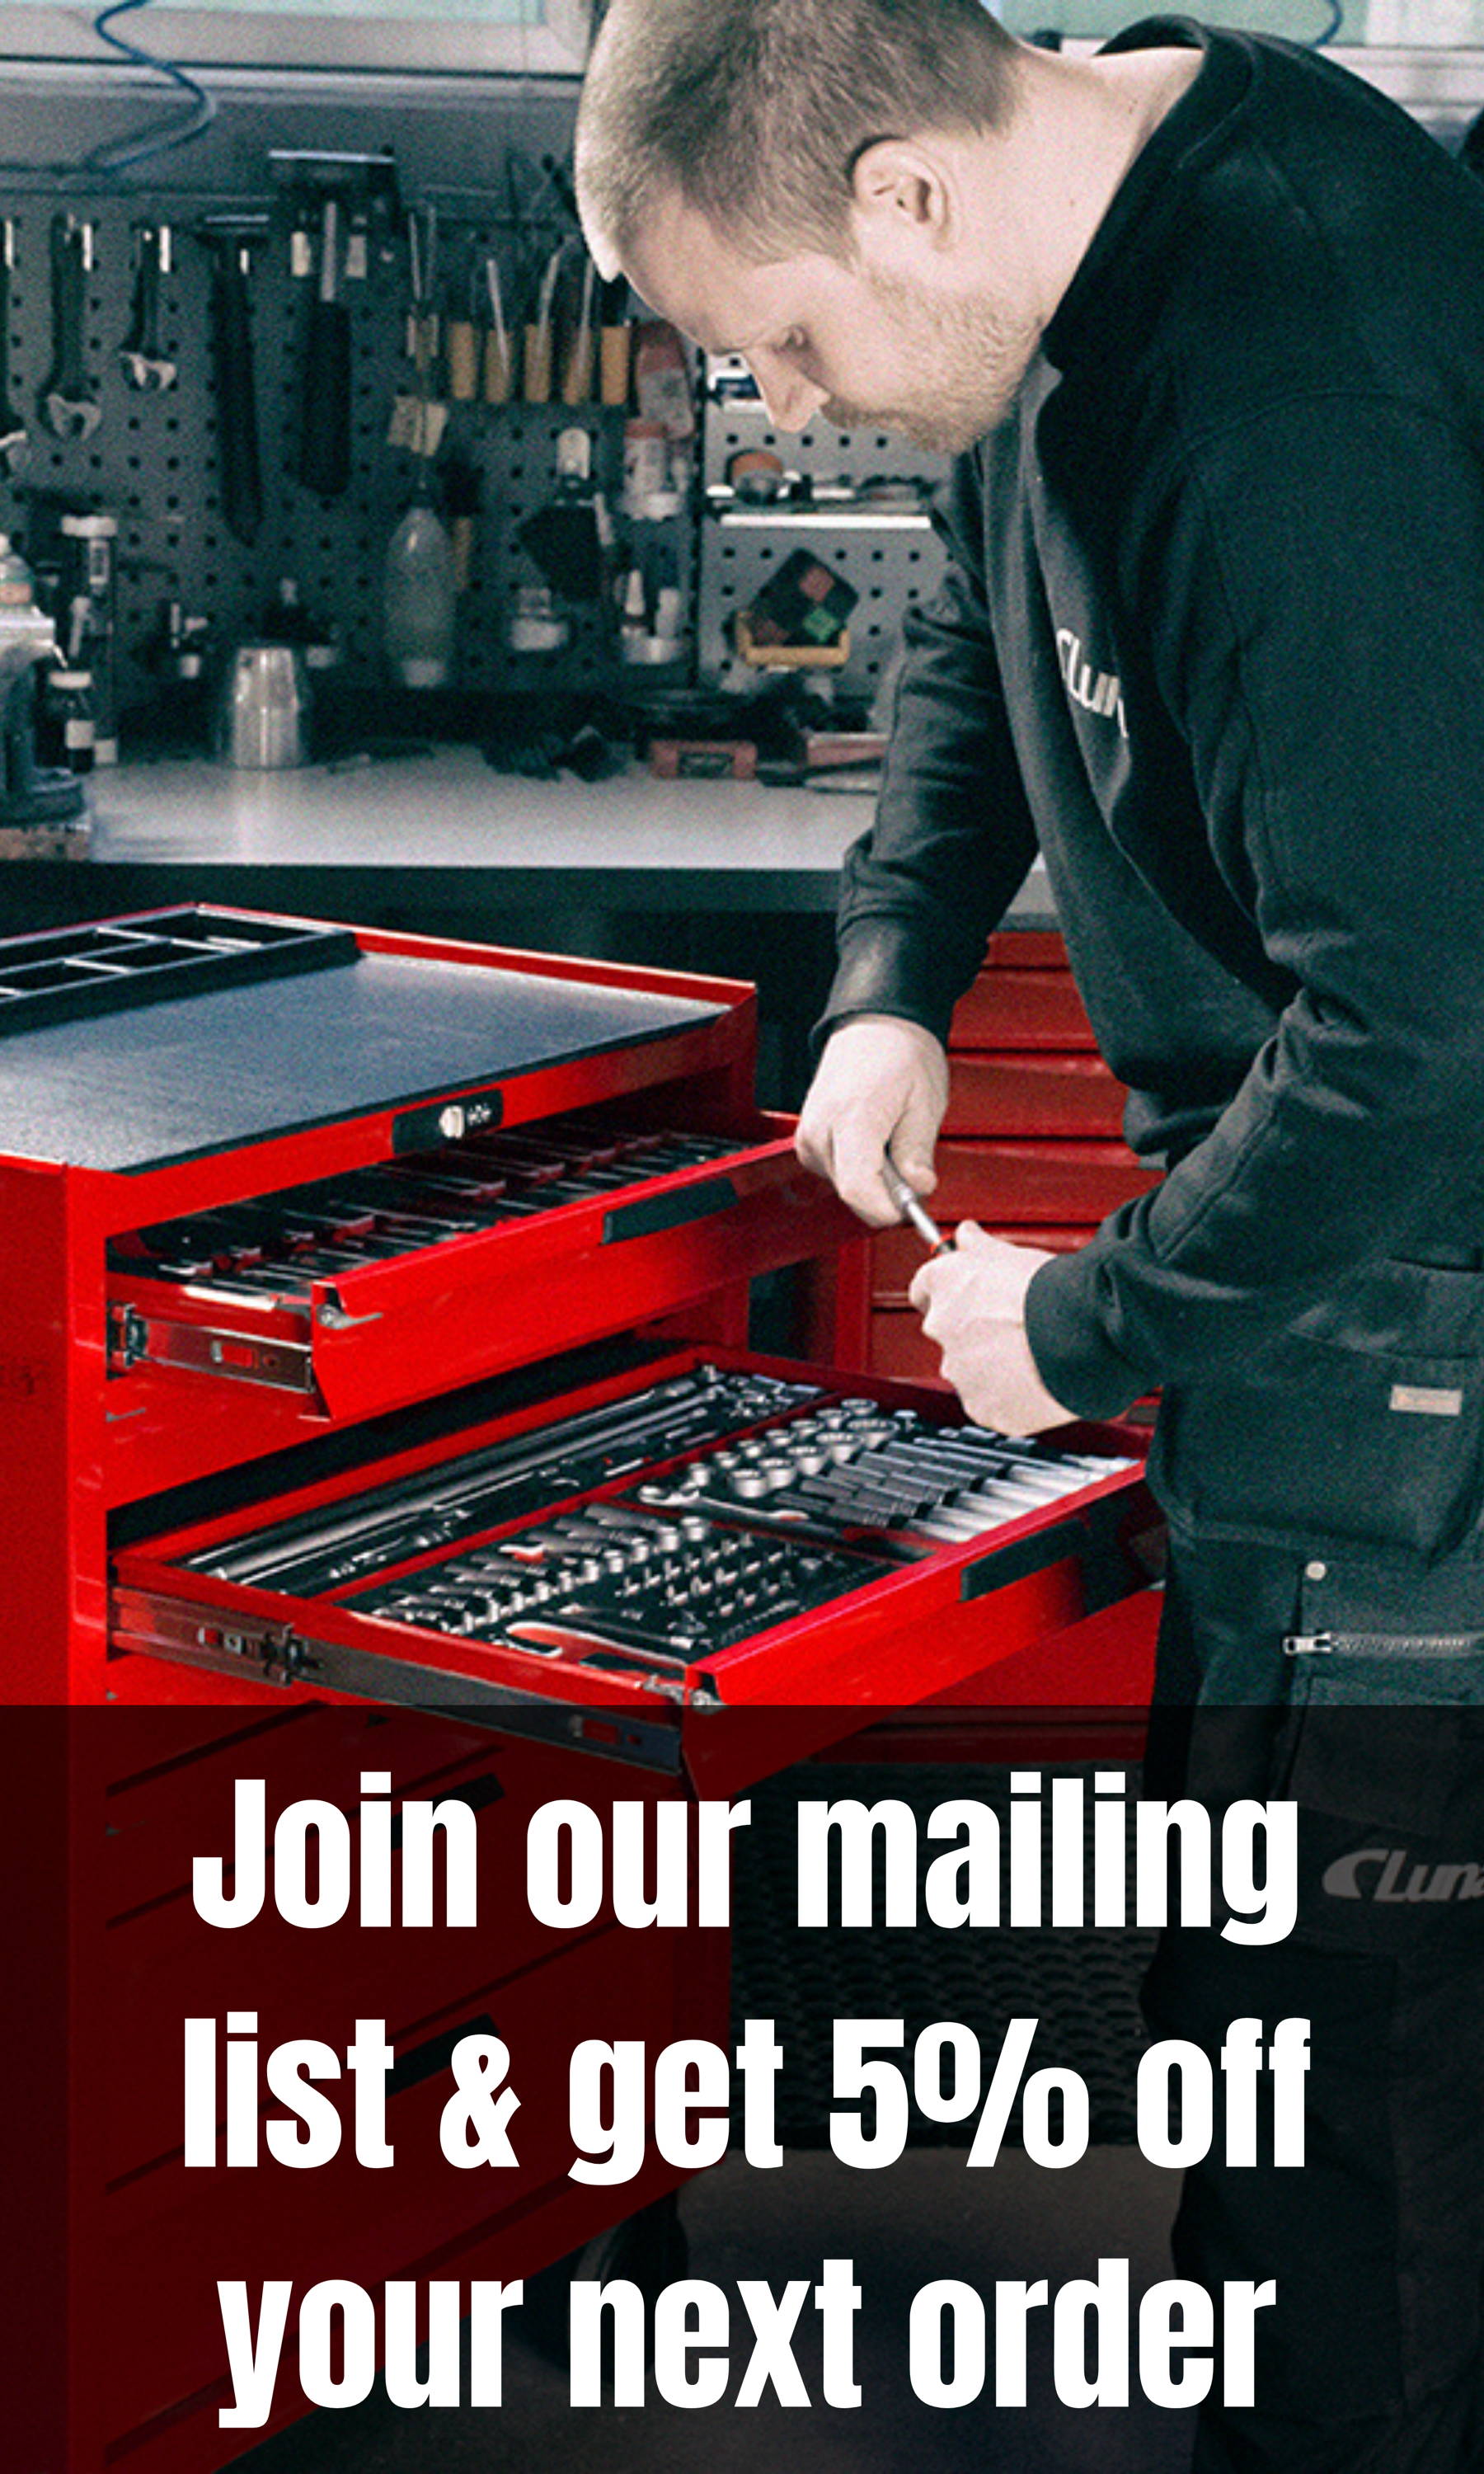 Únase a nuestra lista de correo y obtenga un 5% de descuento en su próximo pedido